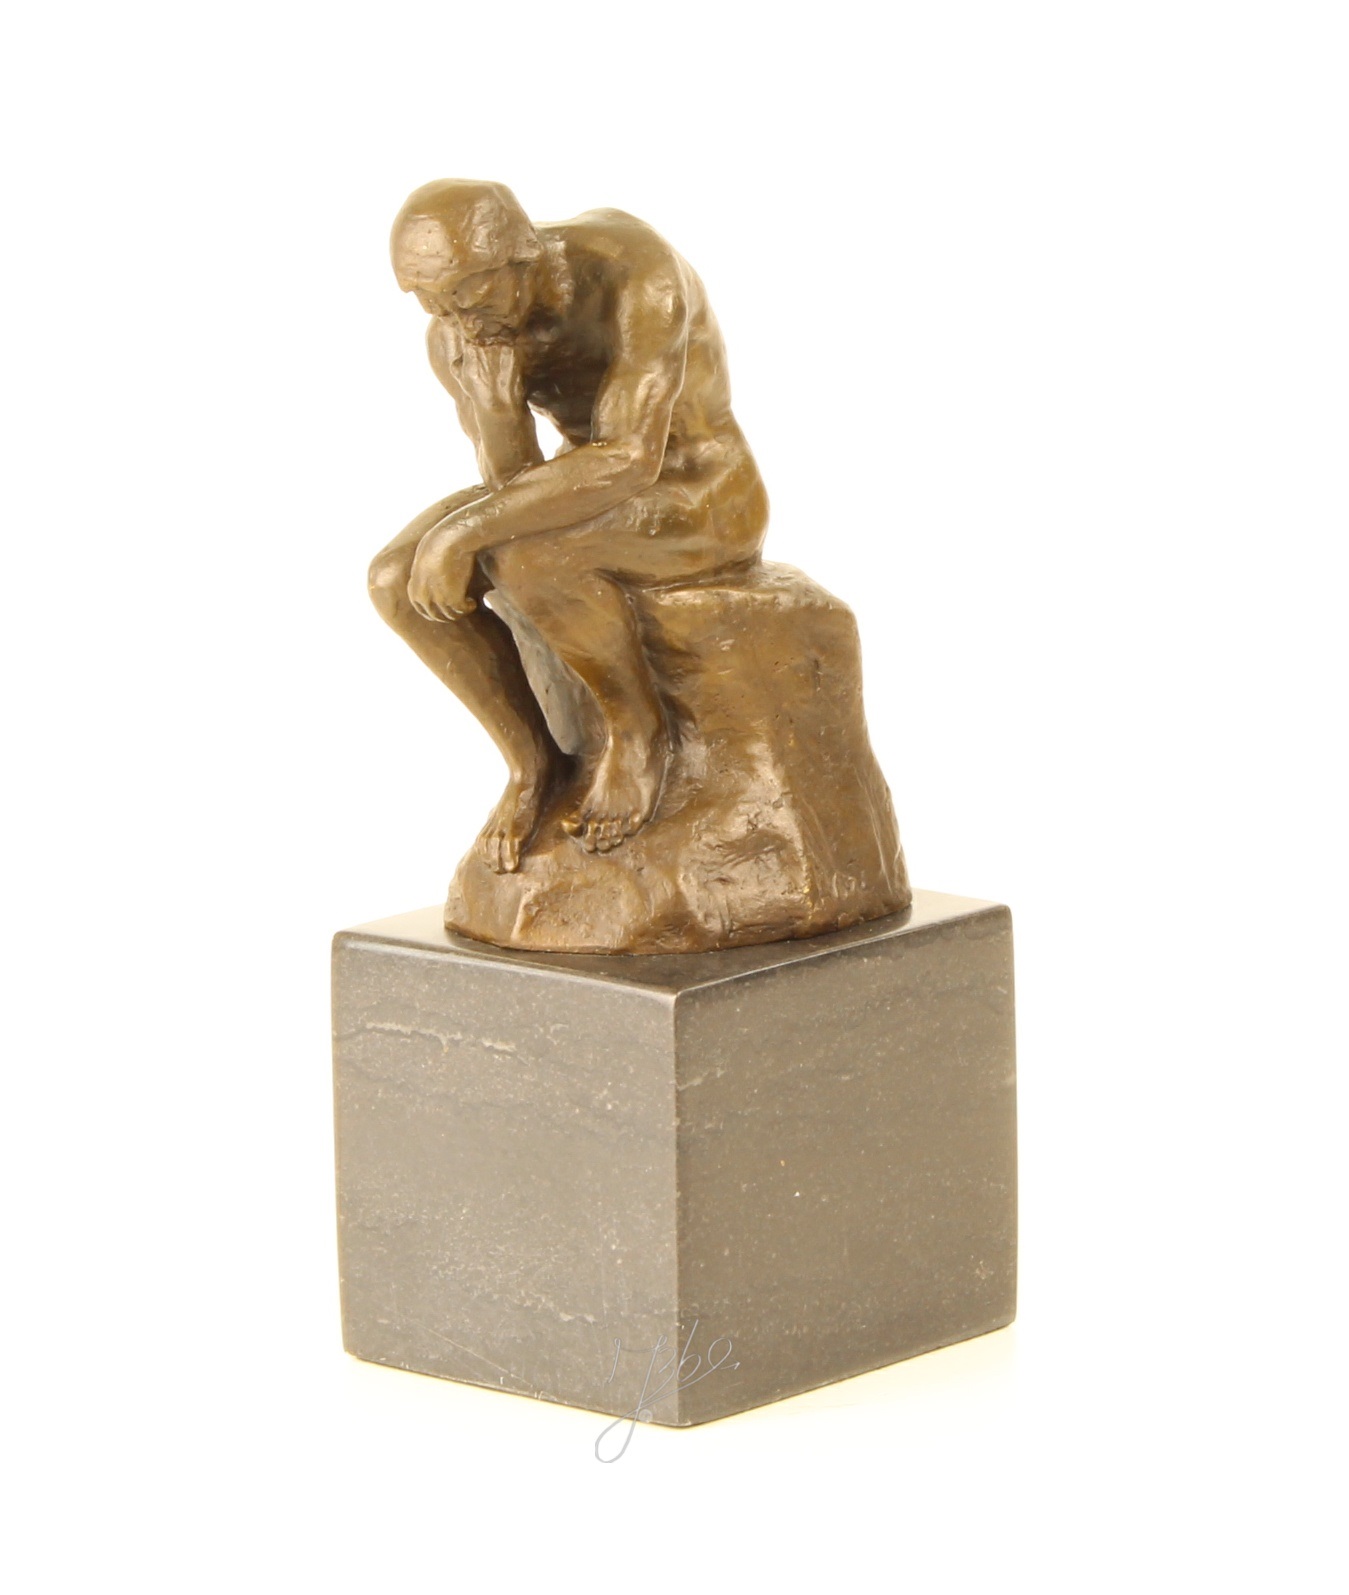 Een bronzen beeld van de denker